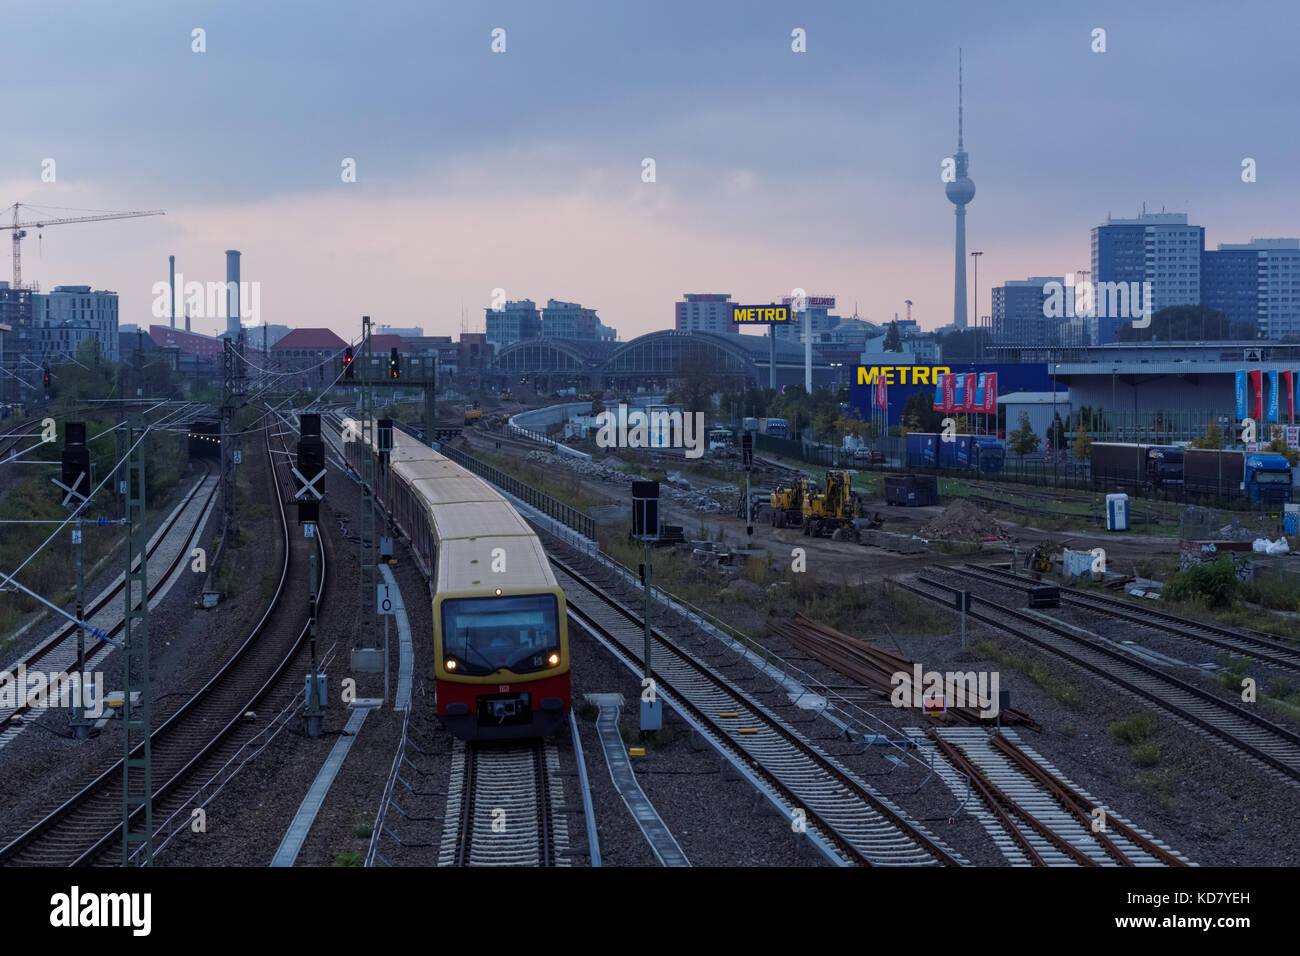 S-bahn train near  Warschauer Strasse station in Berlin, Germany Stock Photo